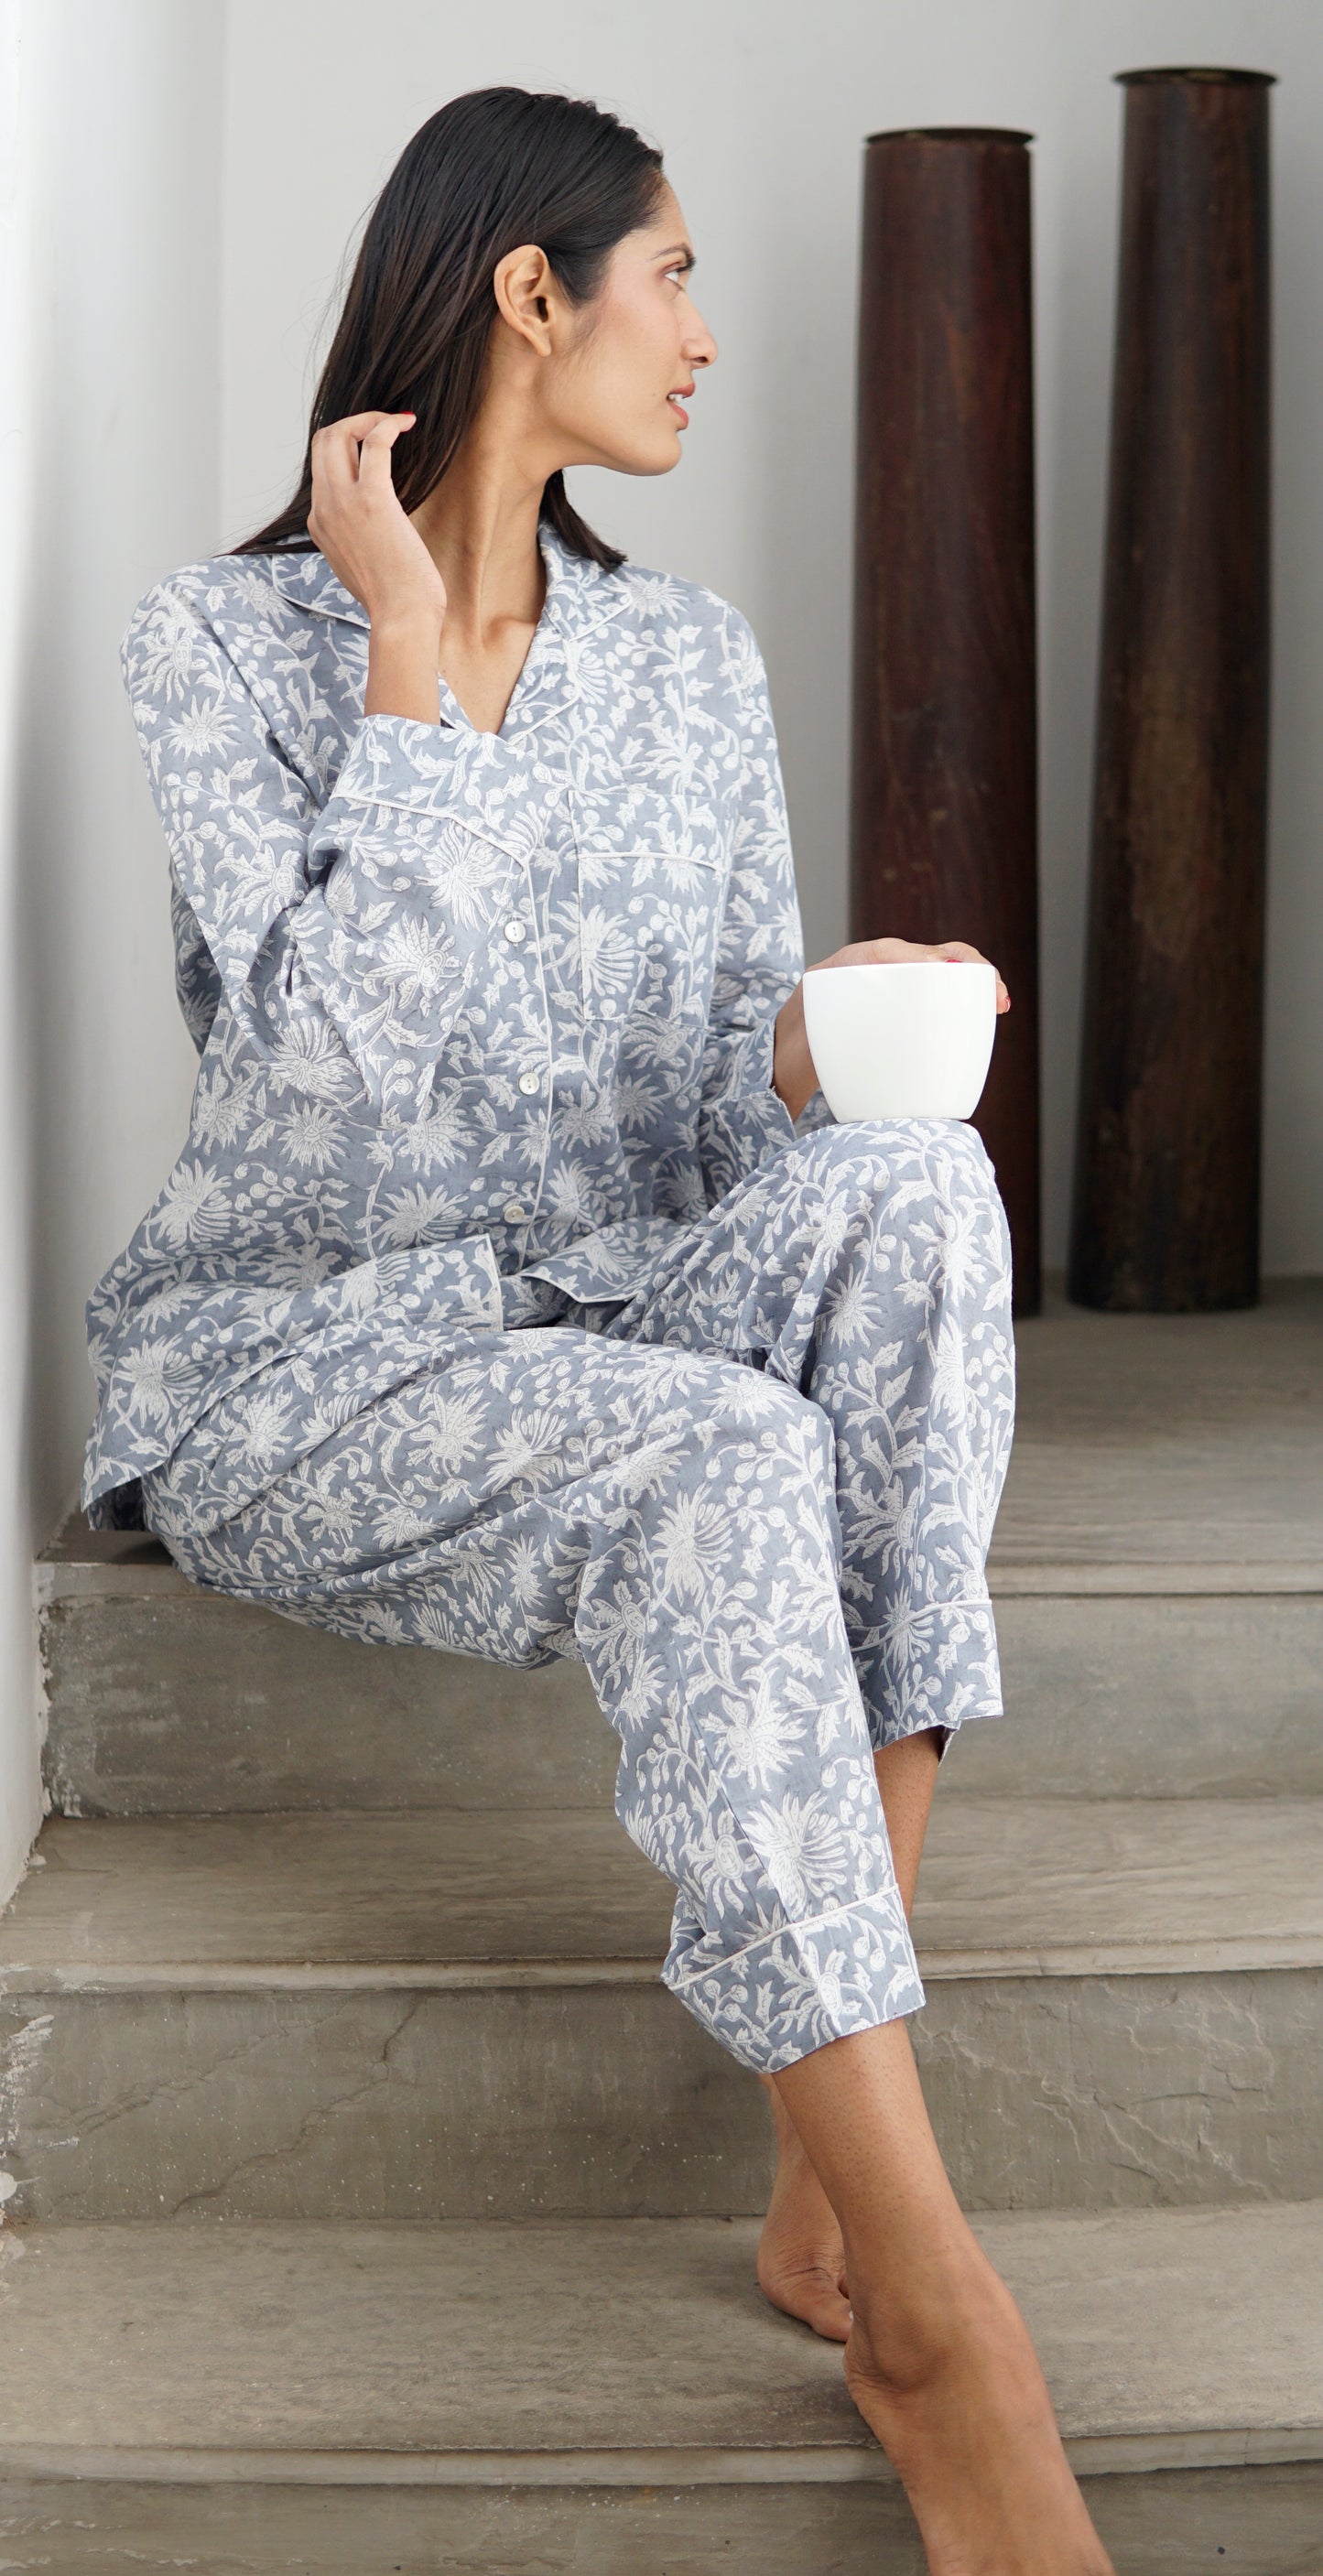 Pyjamas, handmade cotton pyjamas for women. silver grey and white cott